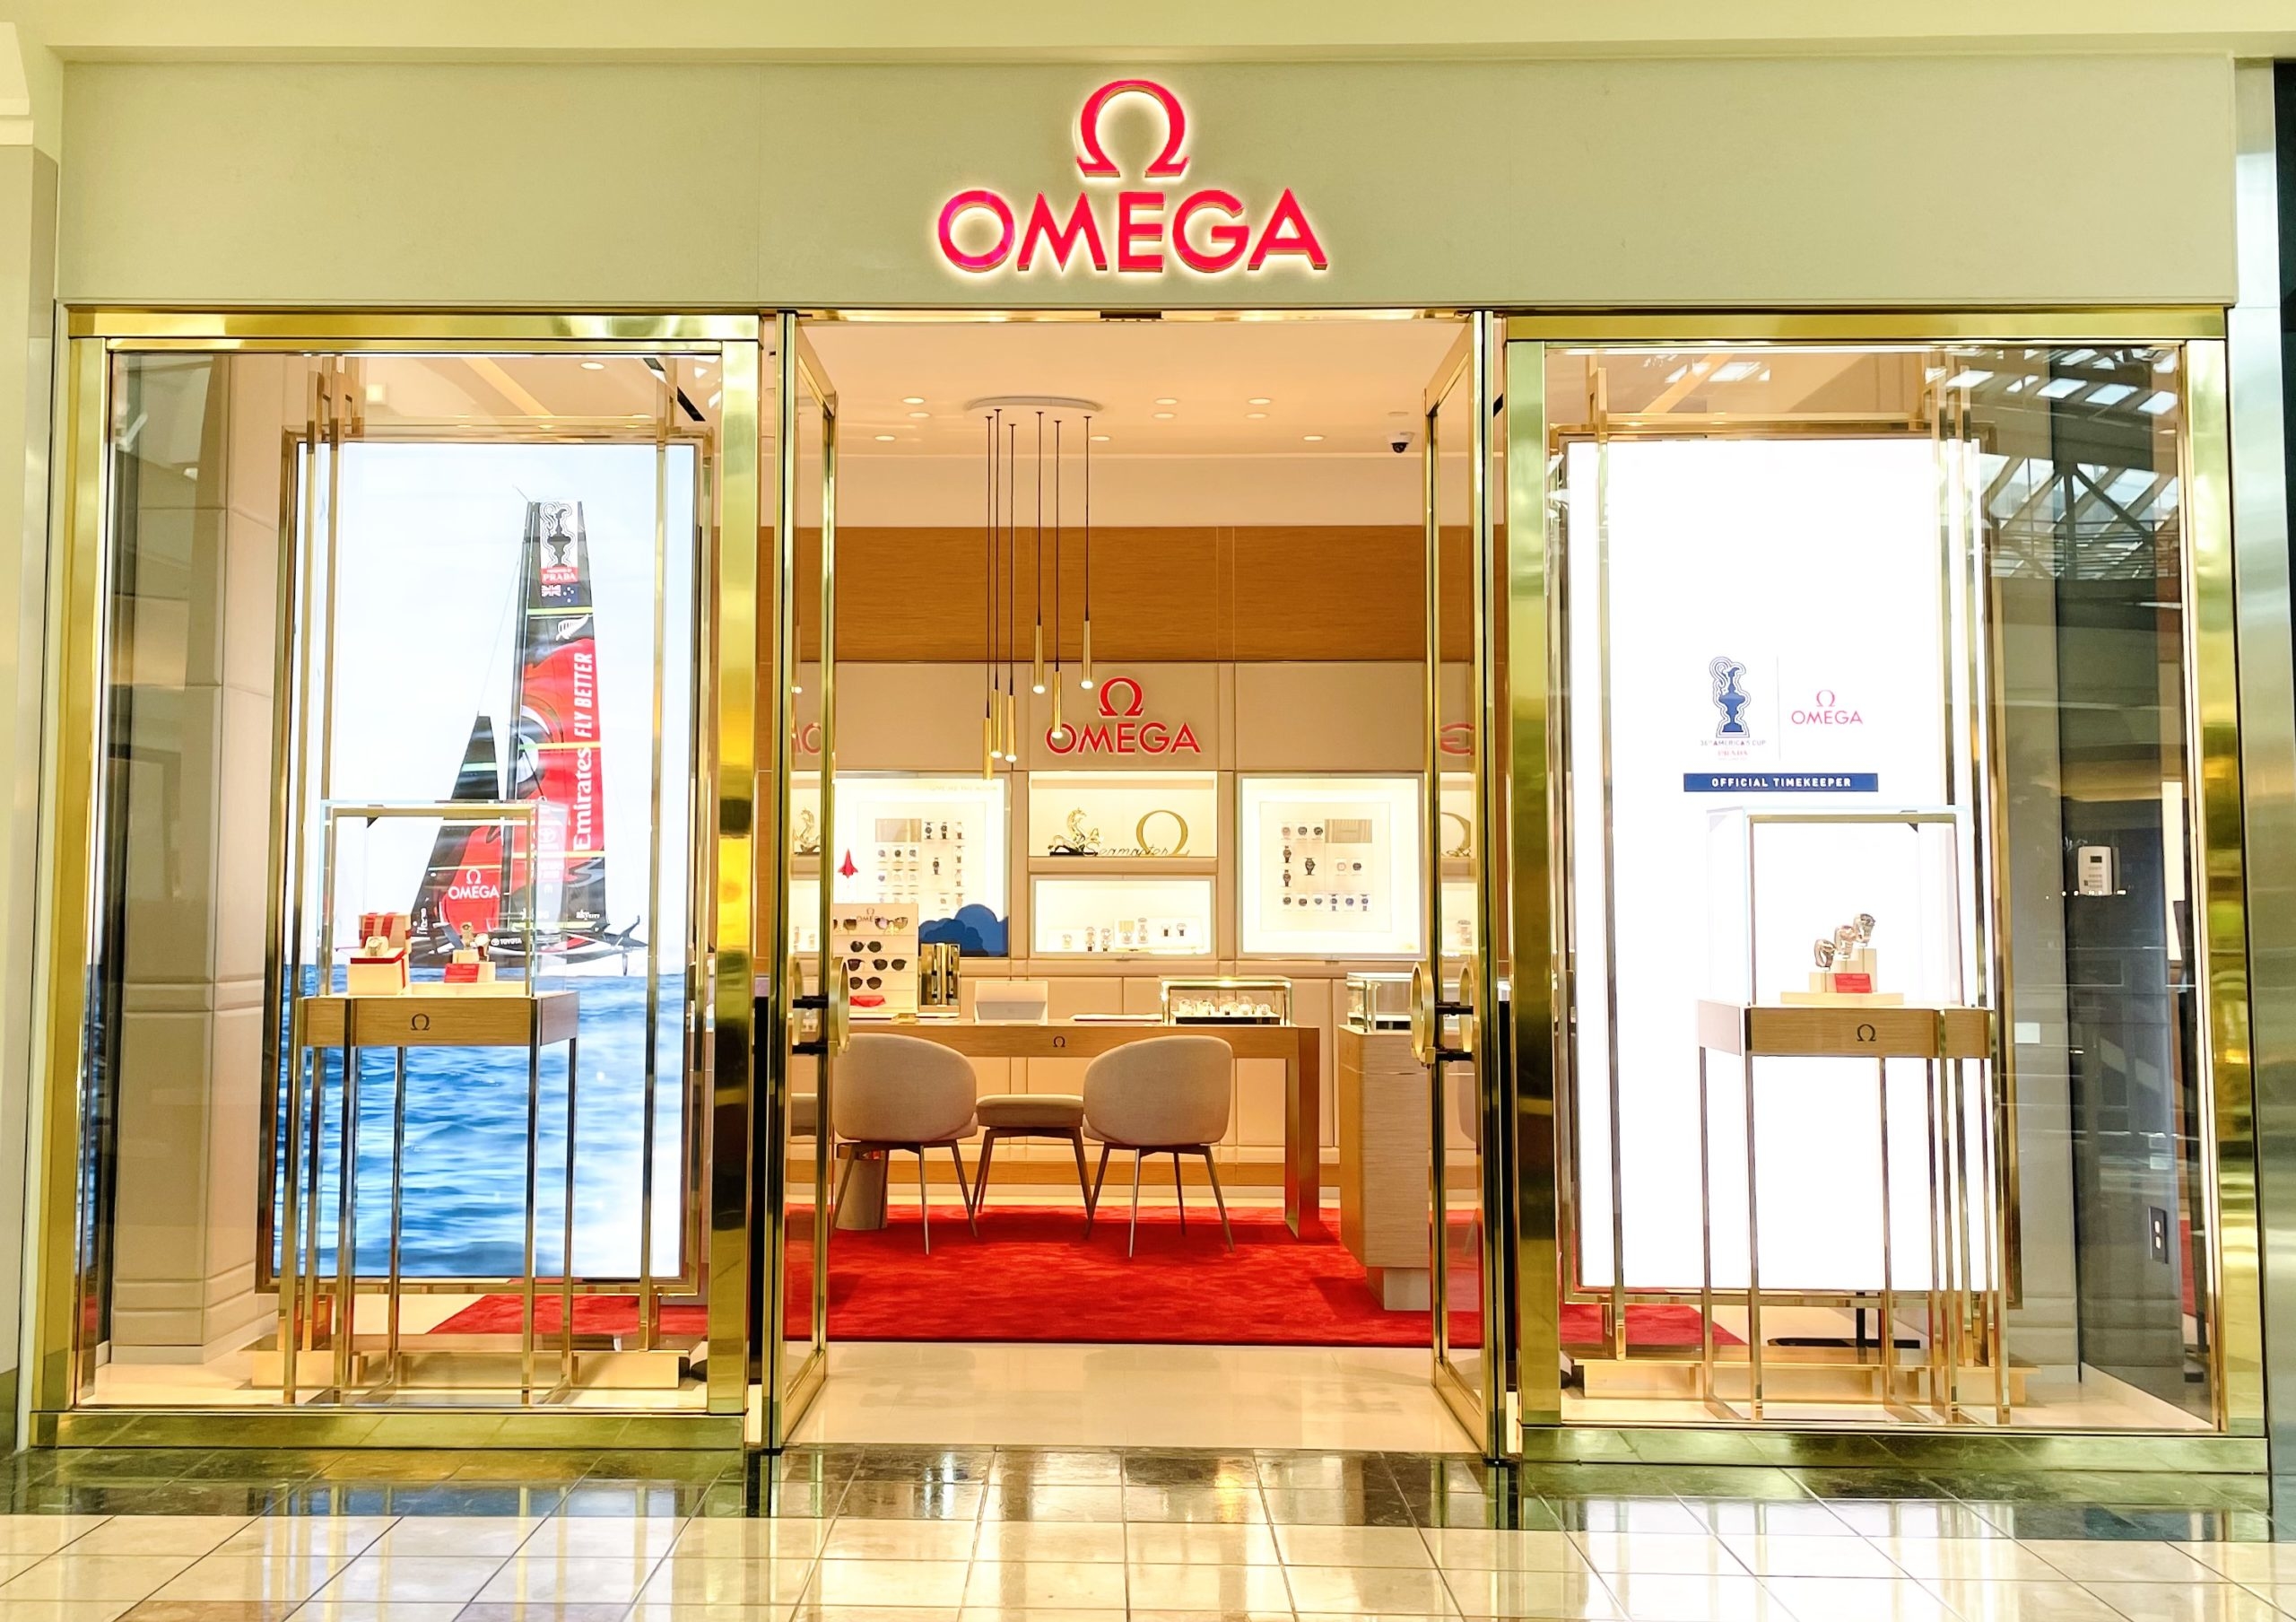 Omega storefront